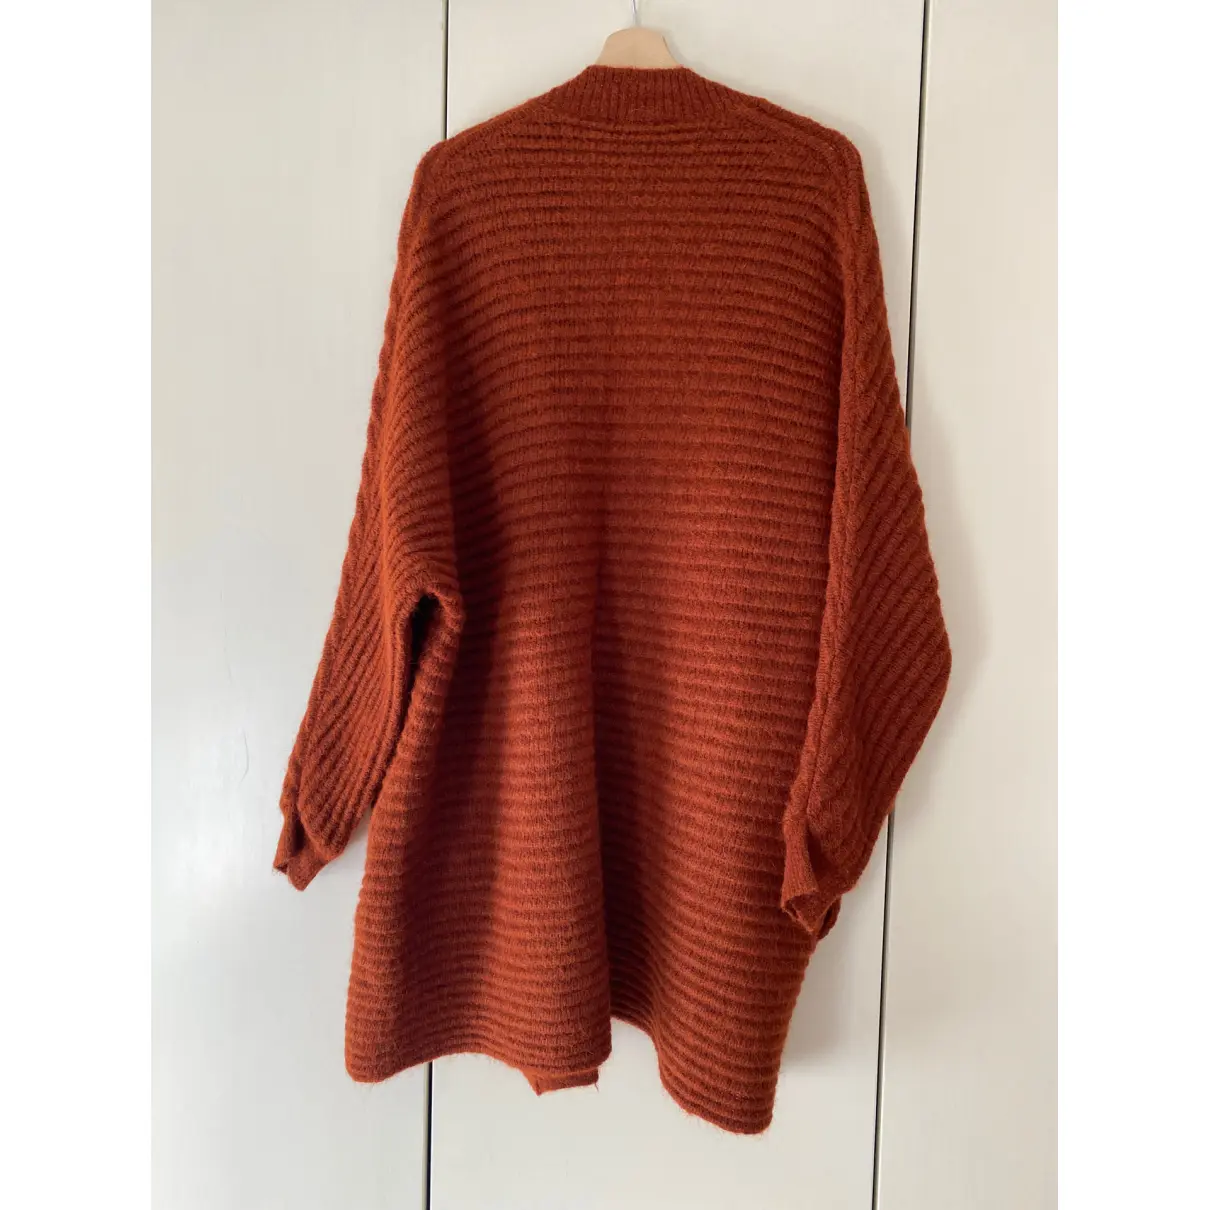 Buy Maje Fall Winter 2020 wool cardigan online